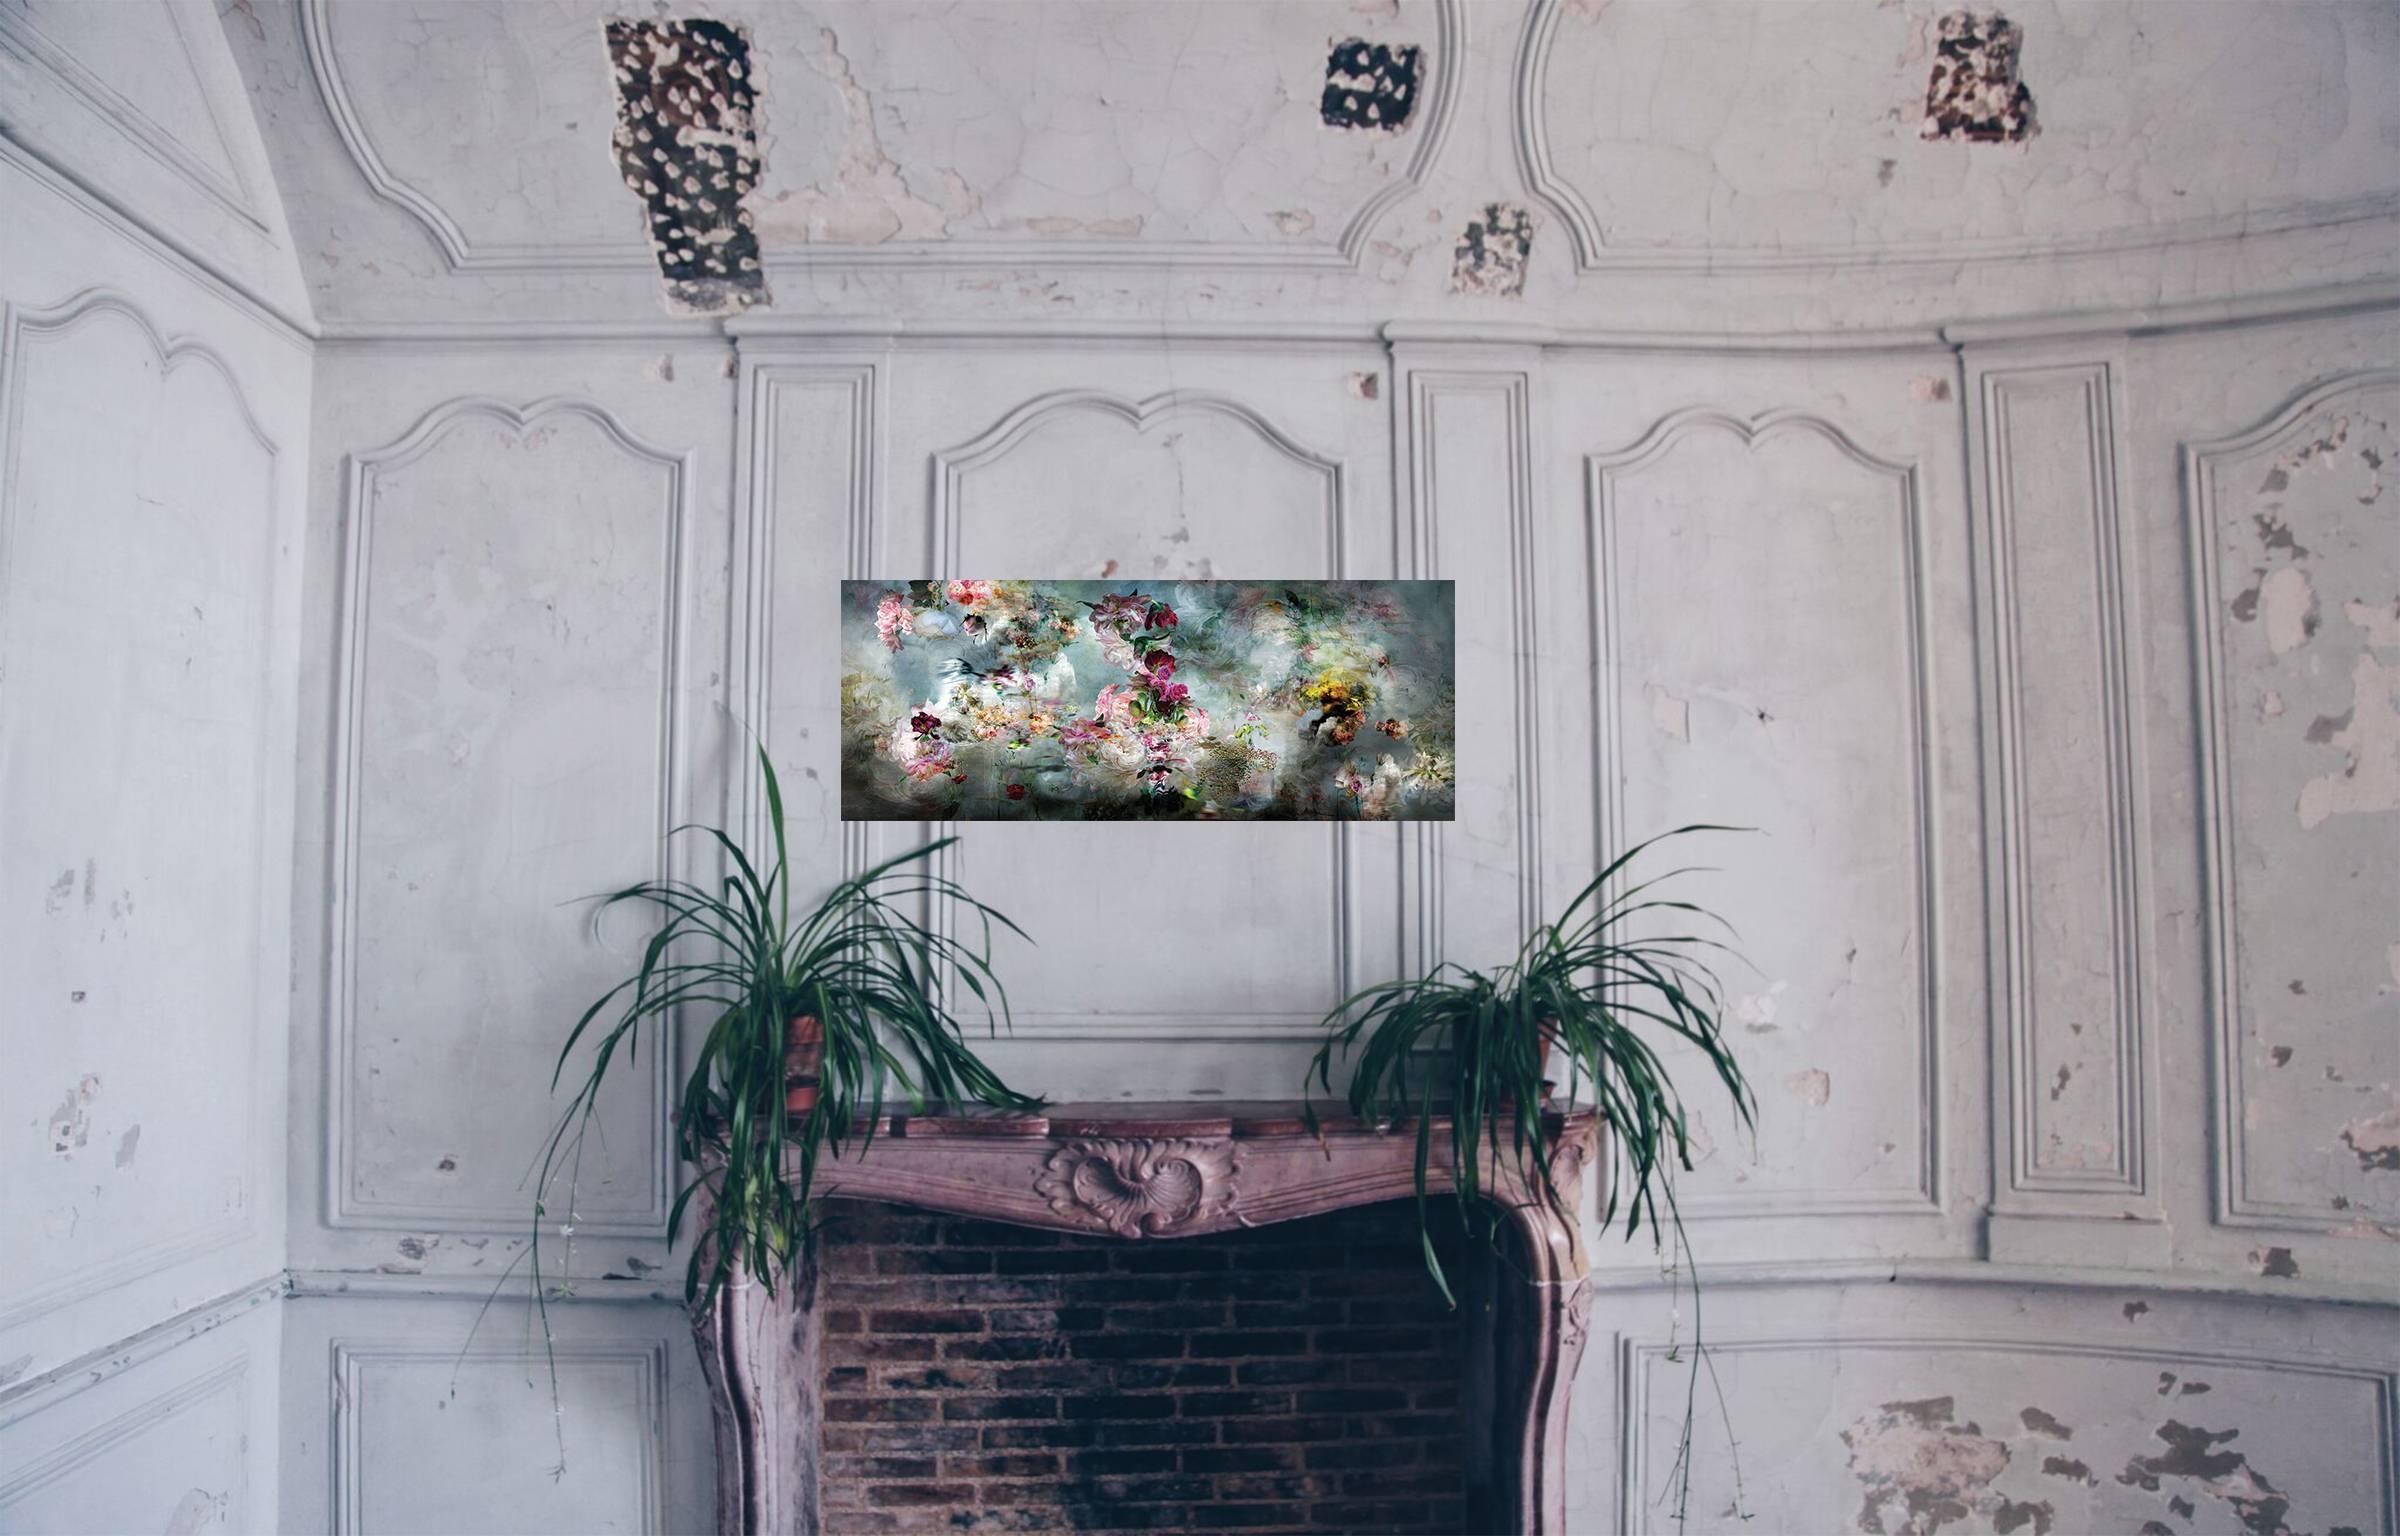 Song for dead heroes #4 florales abstraktes Landschaftsstillleben mit Blumenfoto – Photograph von Isabelle Menin